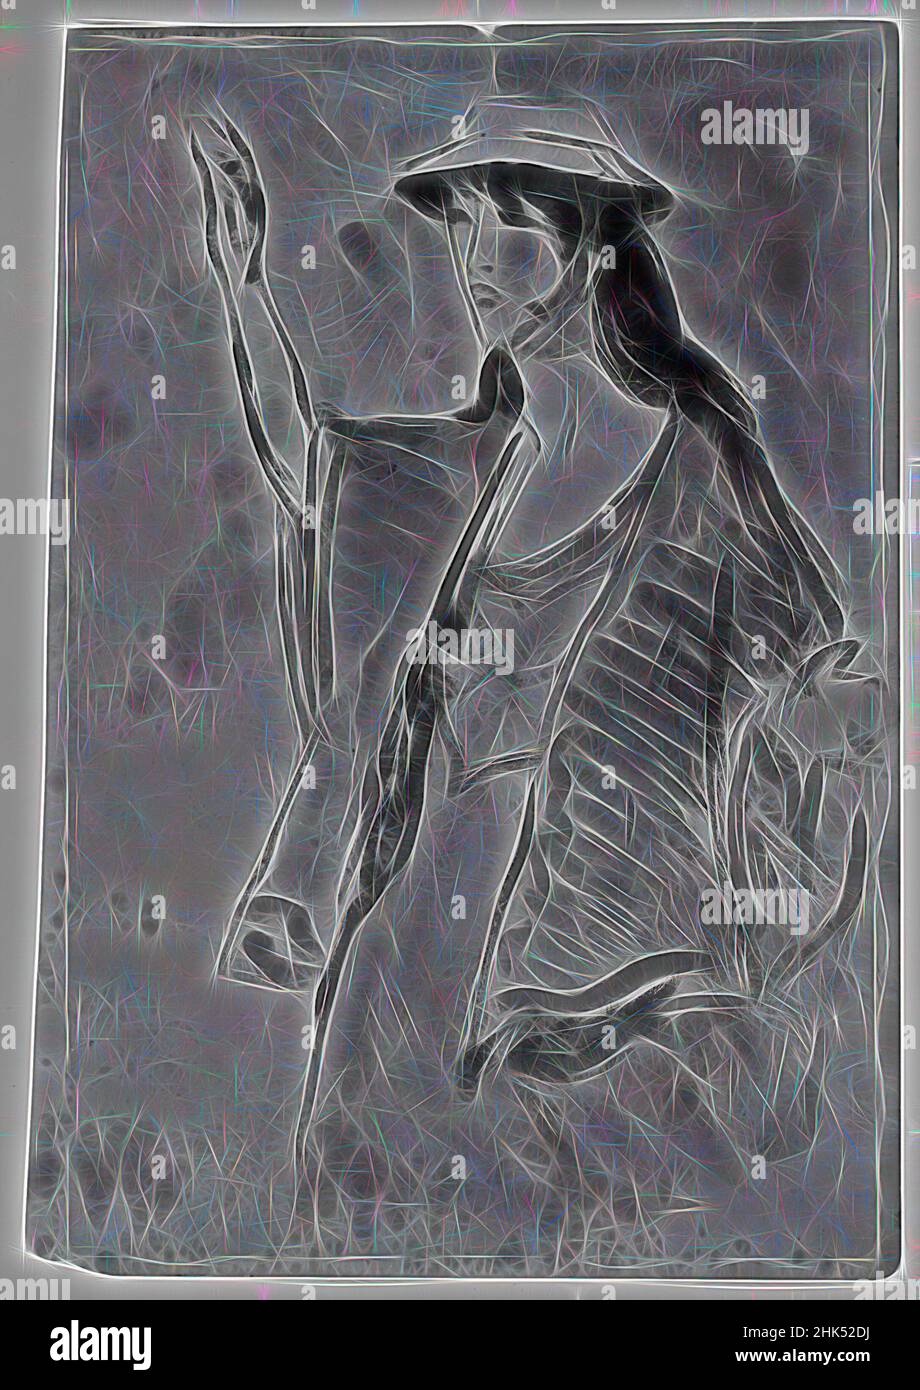 Inspiriert von einer Frau mit erhobener Hand, Robert Henri, Amerikaner, 1865-1929, Aquarell und Graphit auf Papier, n.d., Blatt, leicht unregelmäßig: 12 7/16 x 9 3/4 Zoll, 31,6 x 24,8 cm, neu erfunden von Artotop. Klassische Kunst neu erfunden mit einem modernen Twist. Design von warmen fröhlichen Leuchten der Helligkeit und Lichtstrahl Strahlkraft. Fotografie inspiriert von Surrealismus und Futurismus, umarmt dynamische Energie der modernen Technologie, Bewegung, Geschwindigkeit und Kultur zu revolutionieren Stockfoto